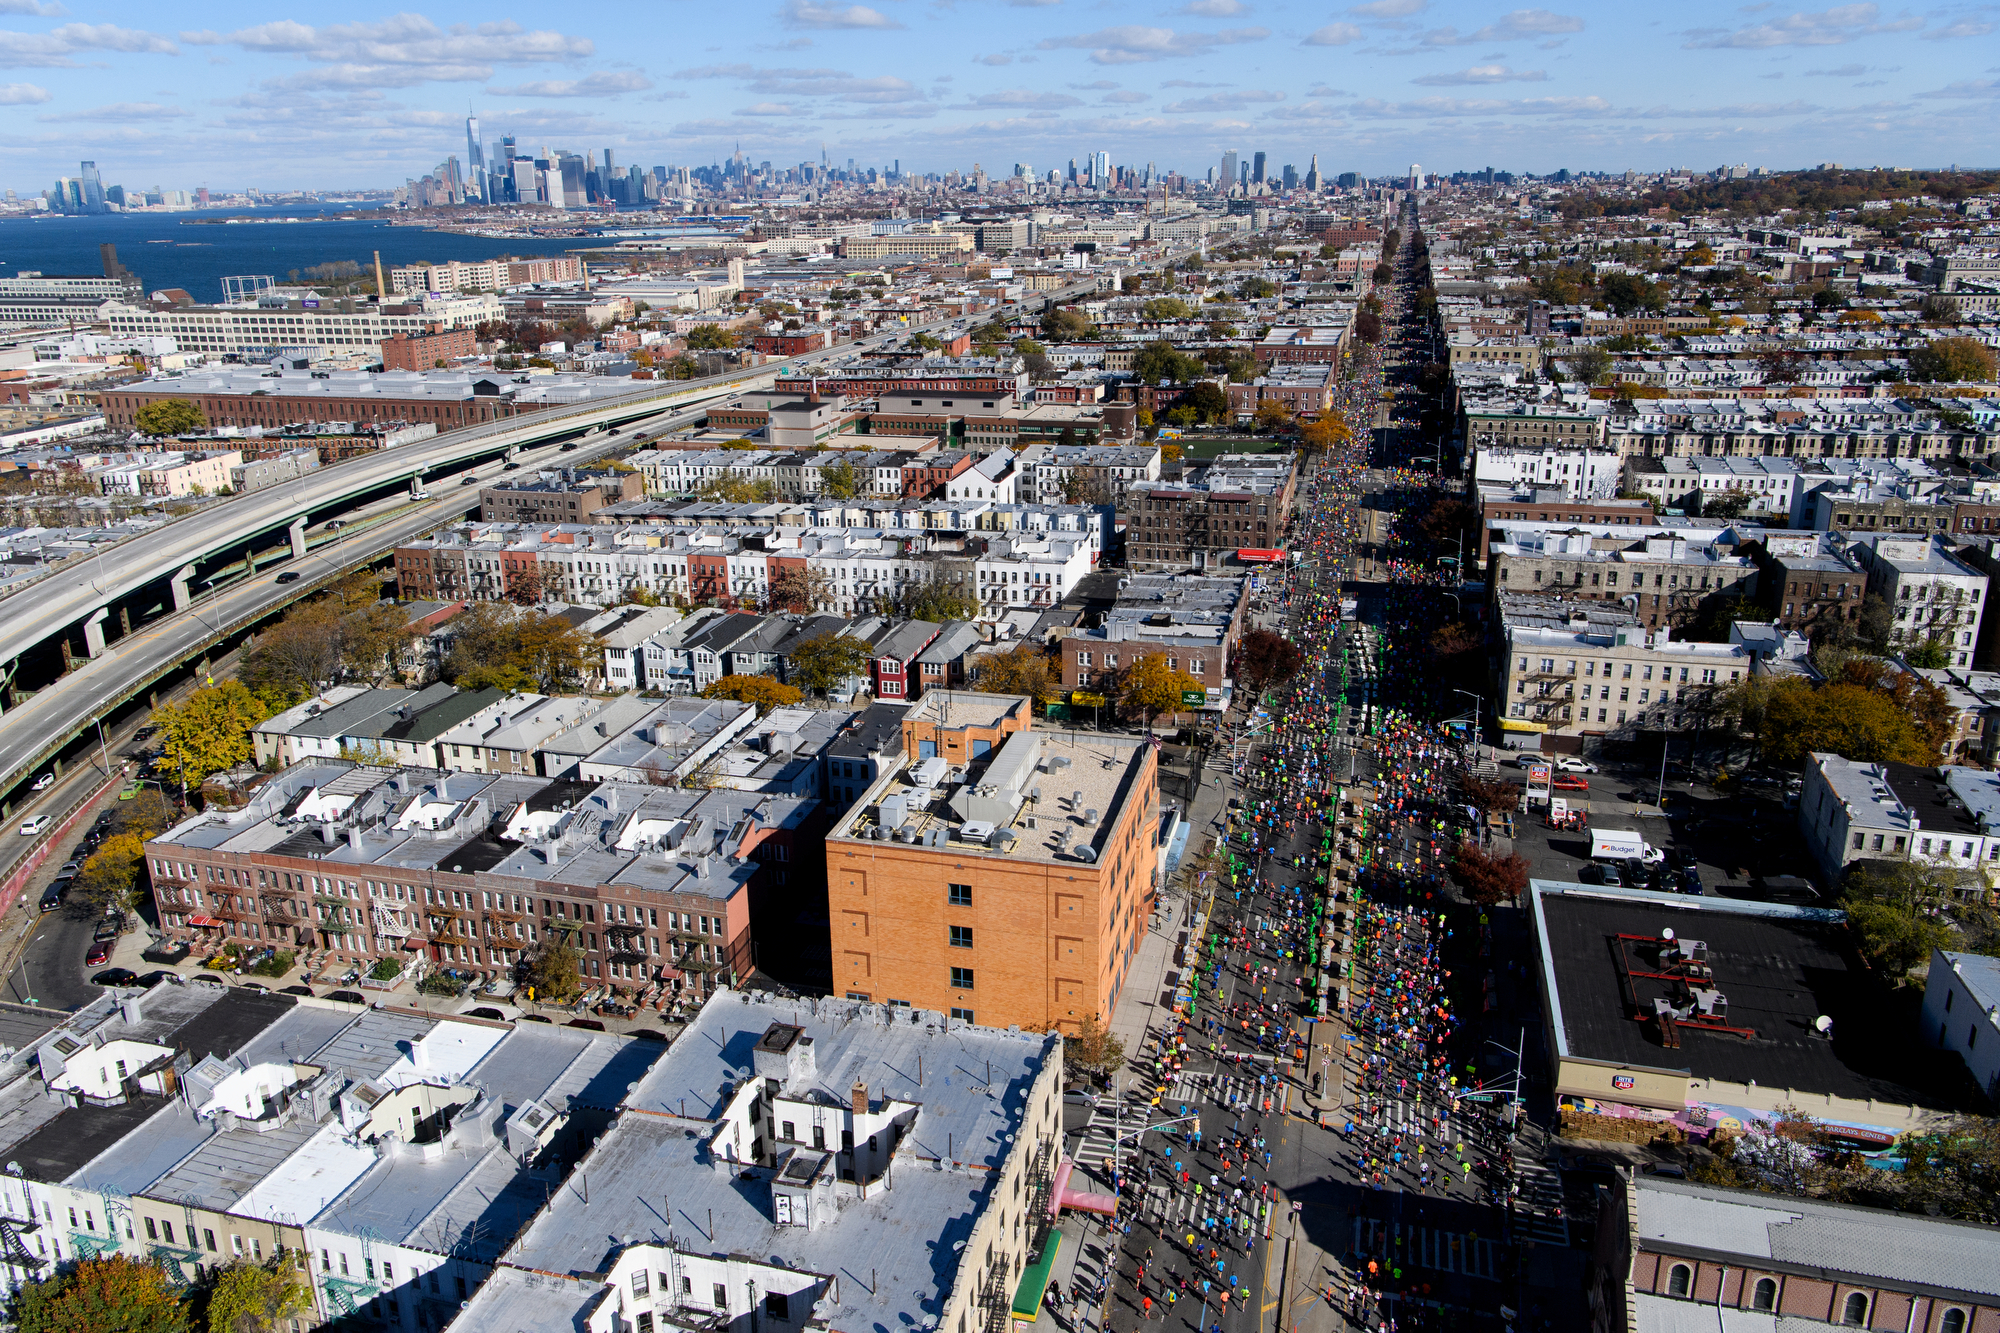 New York, NY - November 6, 2016: ****Aerial Coverage of the New York City Marathon for ESPN. **** (Joe McNally for ESPN)